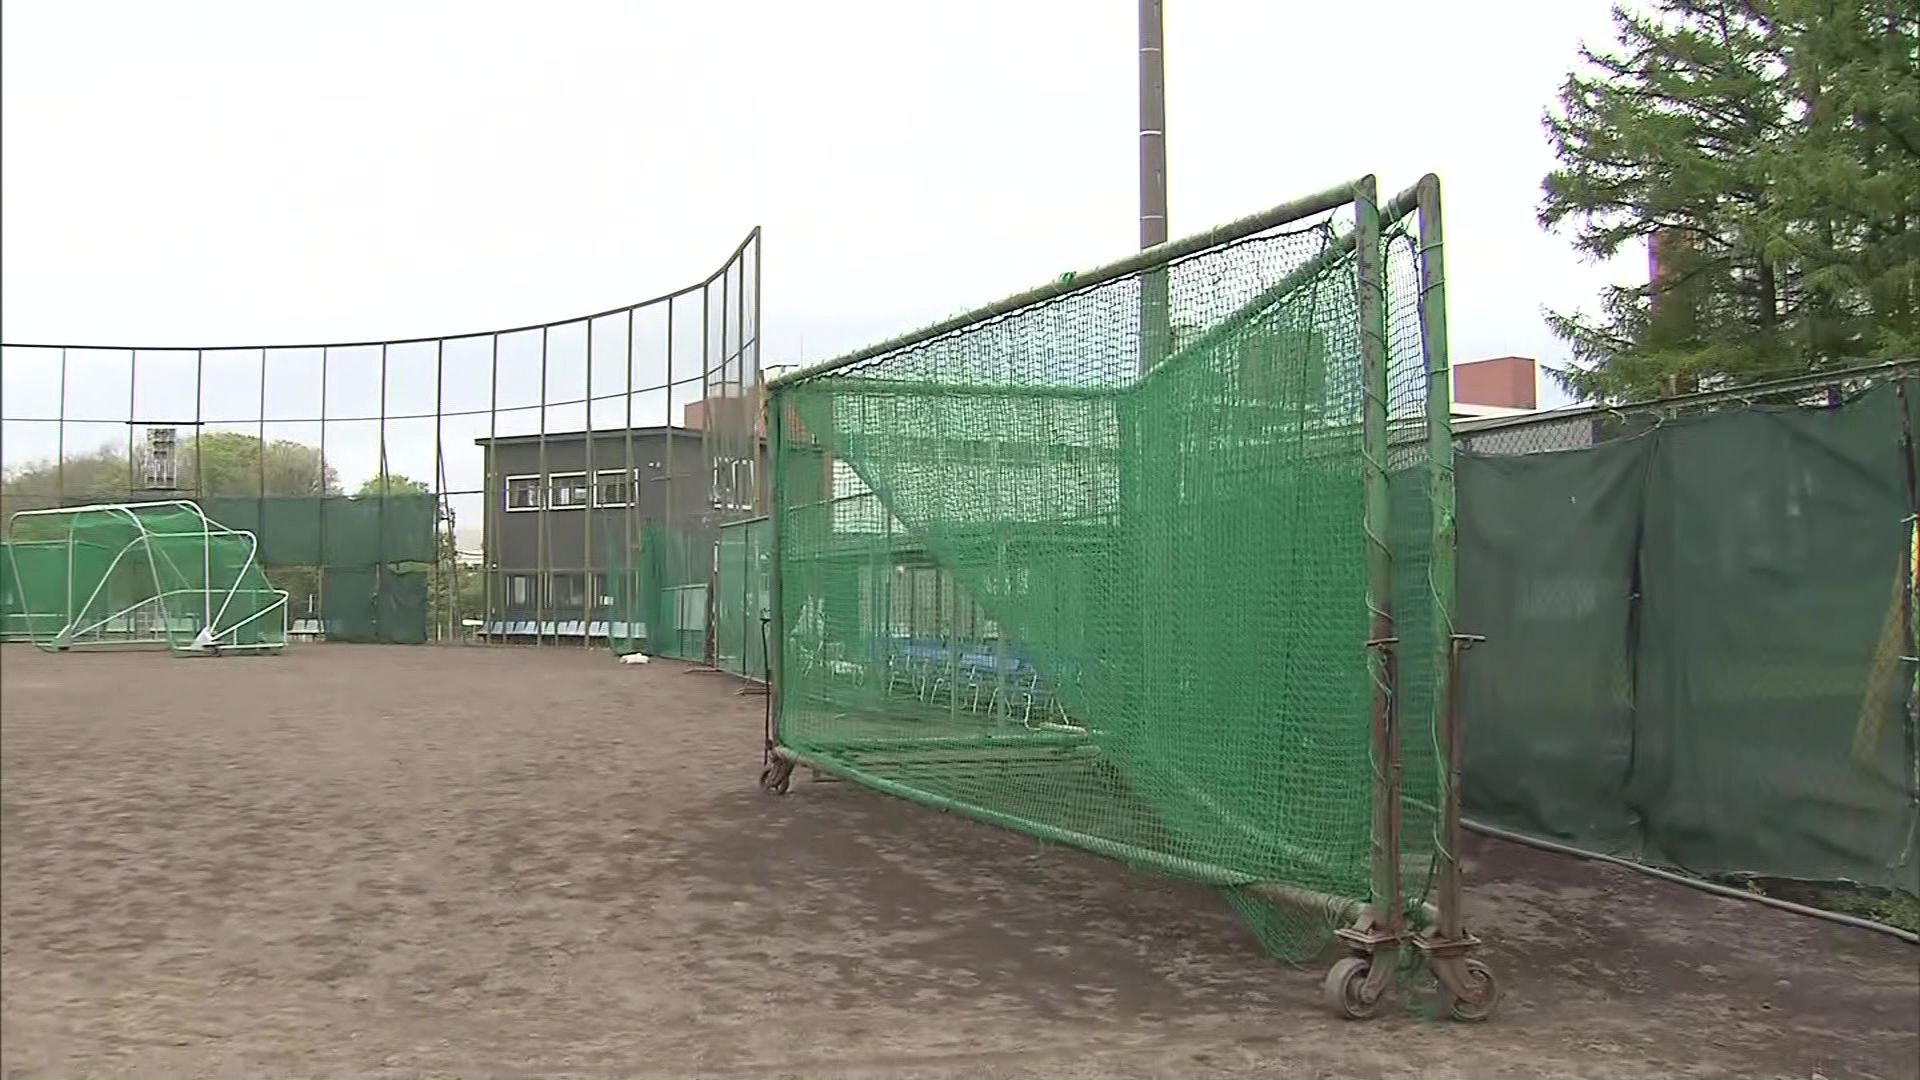 札幌新陽高校 500キロ超のケージの下敷きで野球部員重体 女子野球部監督を業務上過失致傷の疑いで書類送検「再発防止を徹底していきたい」